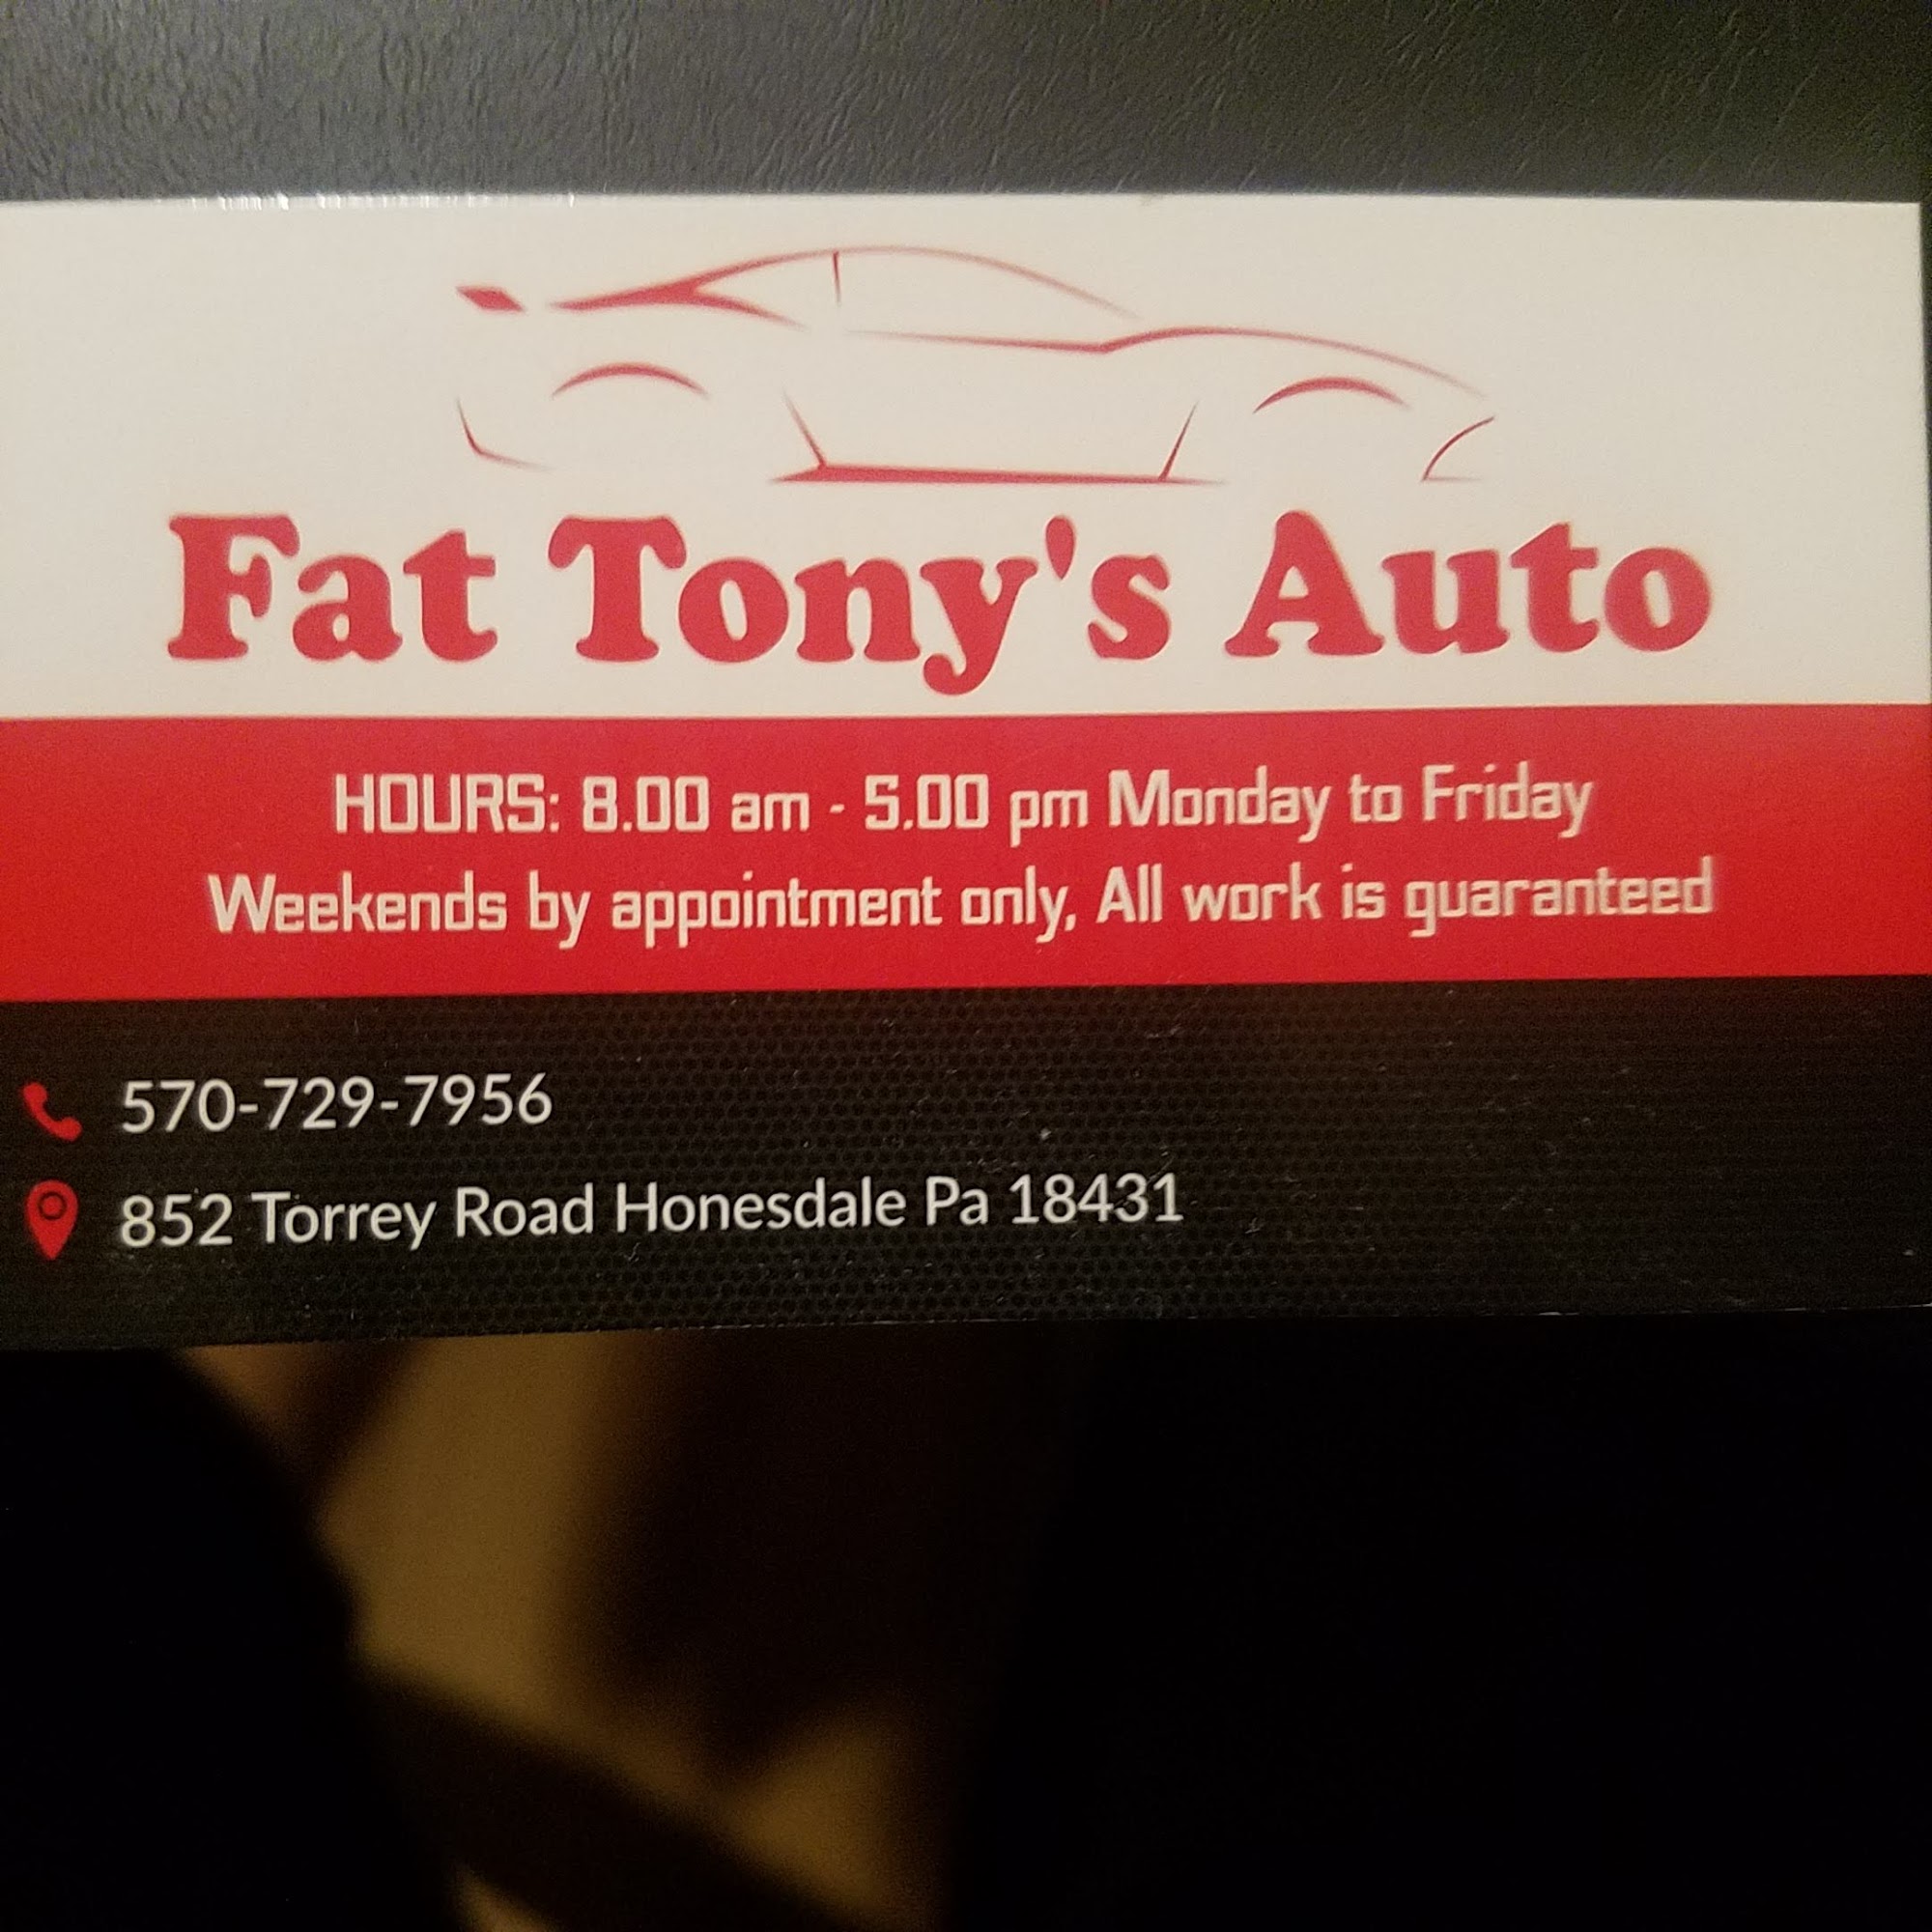 Fat Tony's Auto